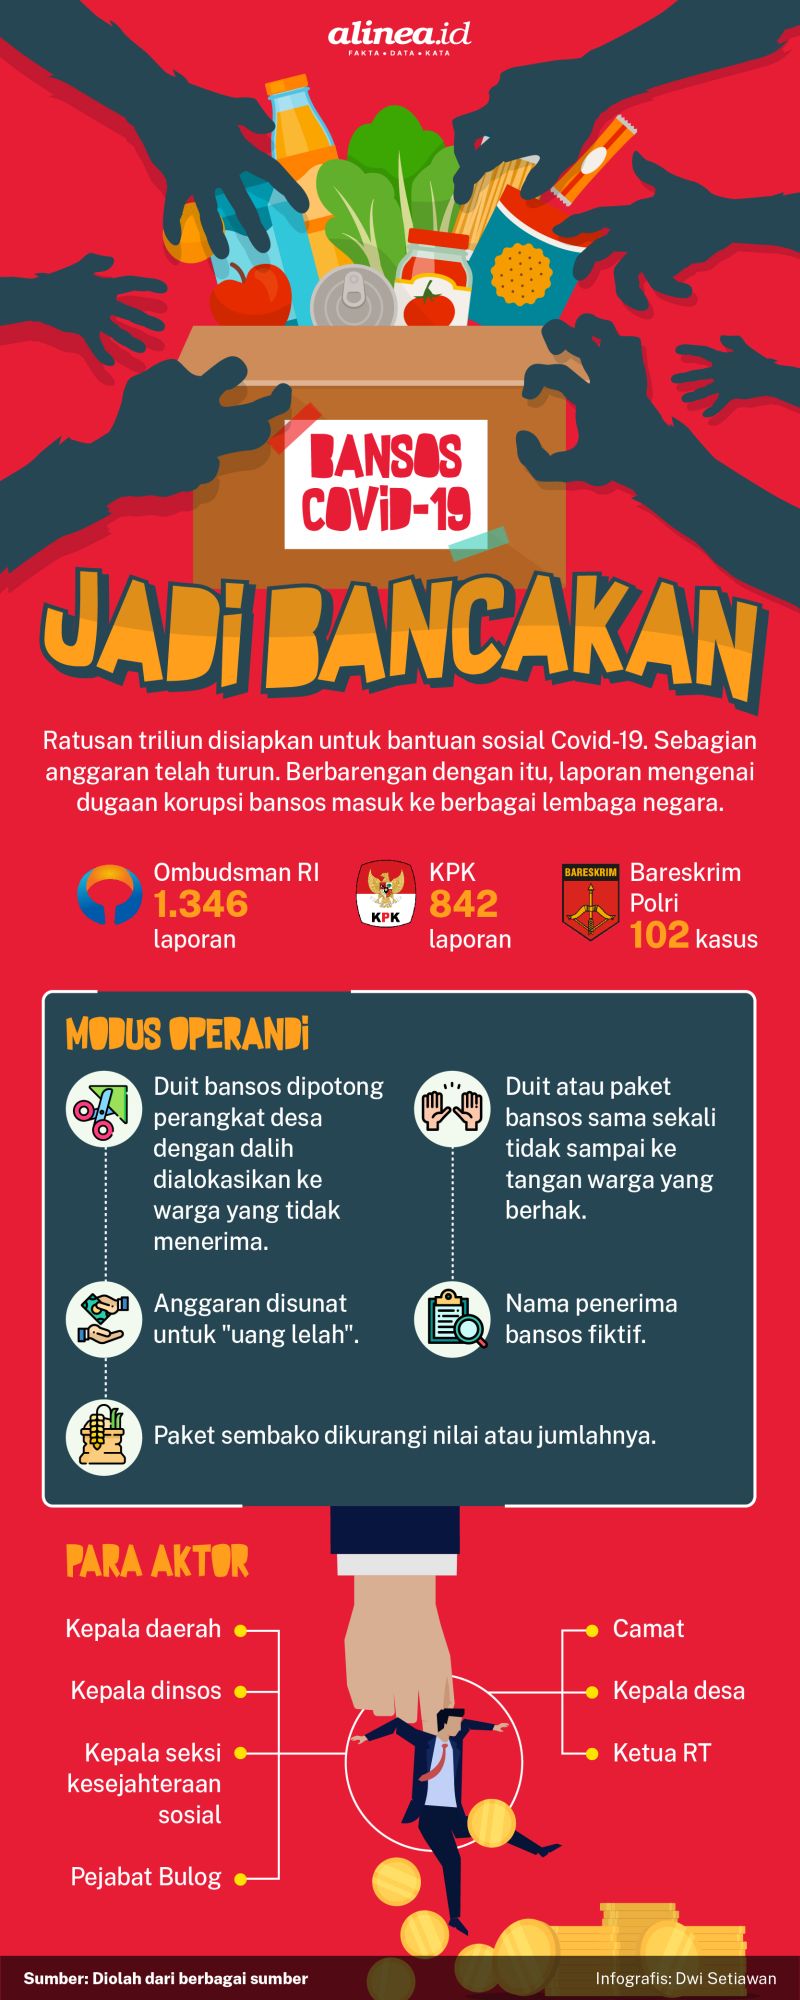 Infografis Alinea.id/Dwi Setiawan